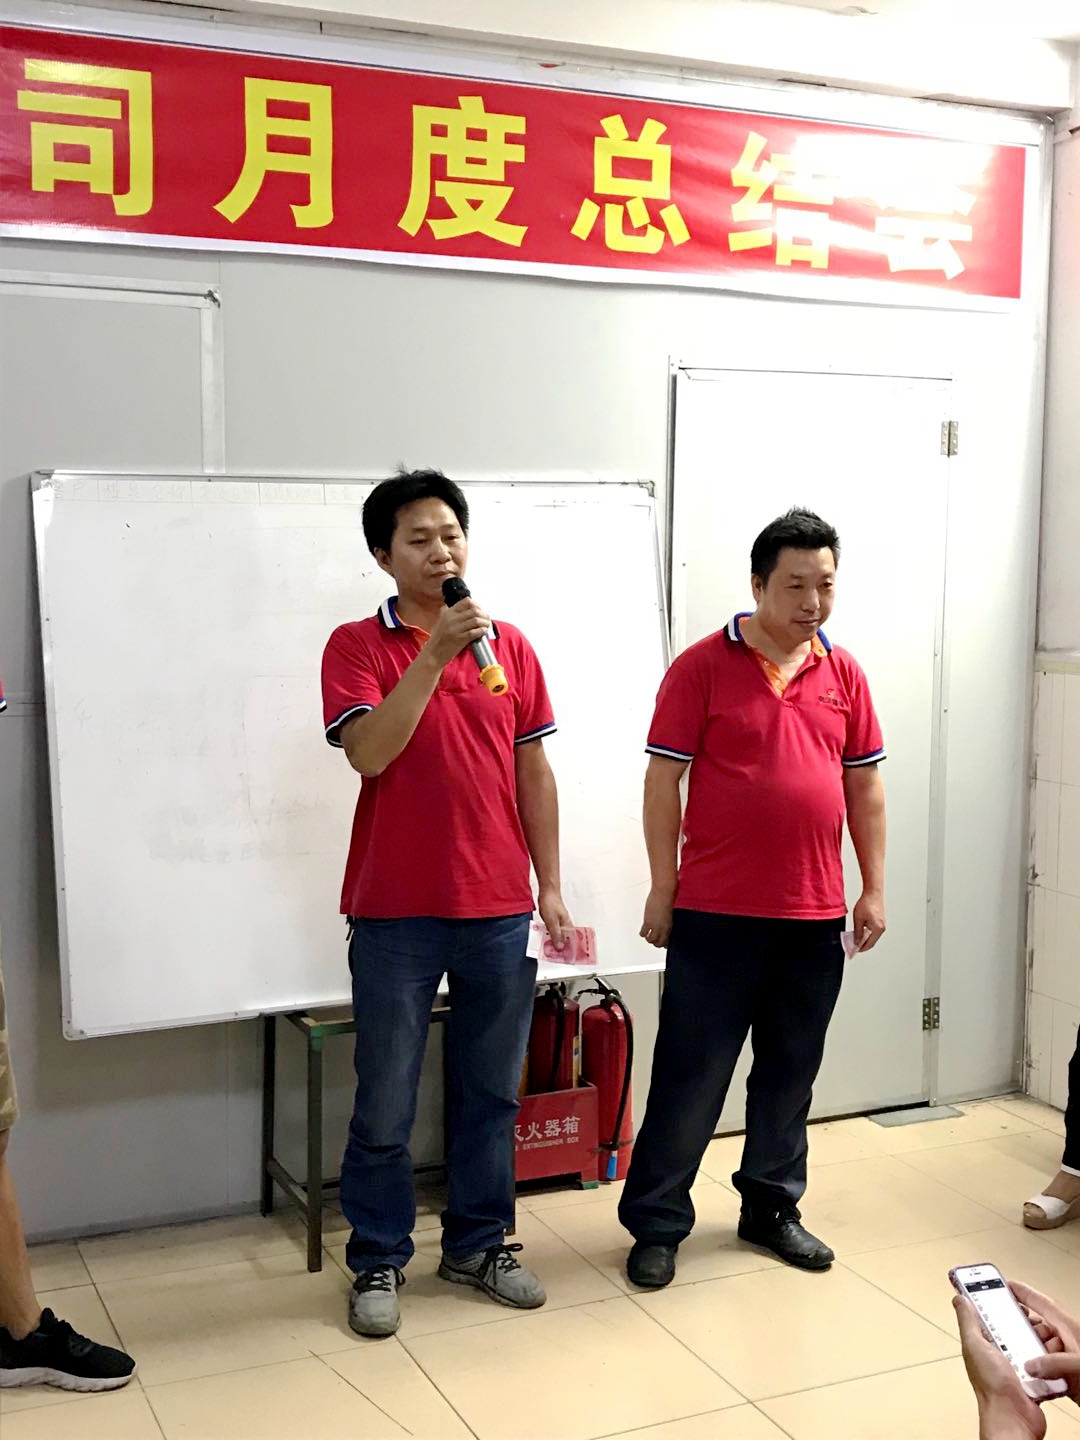 贵华省模组第三名唐明均发表获奖感言